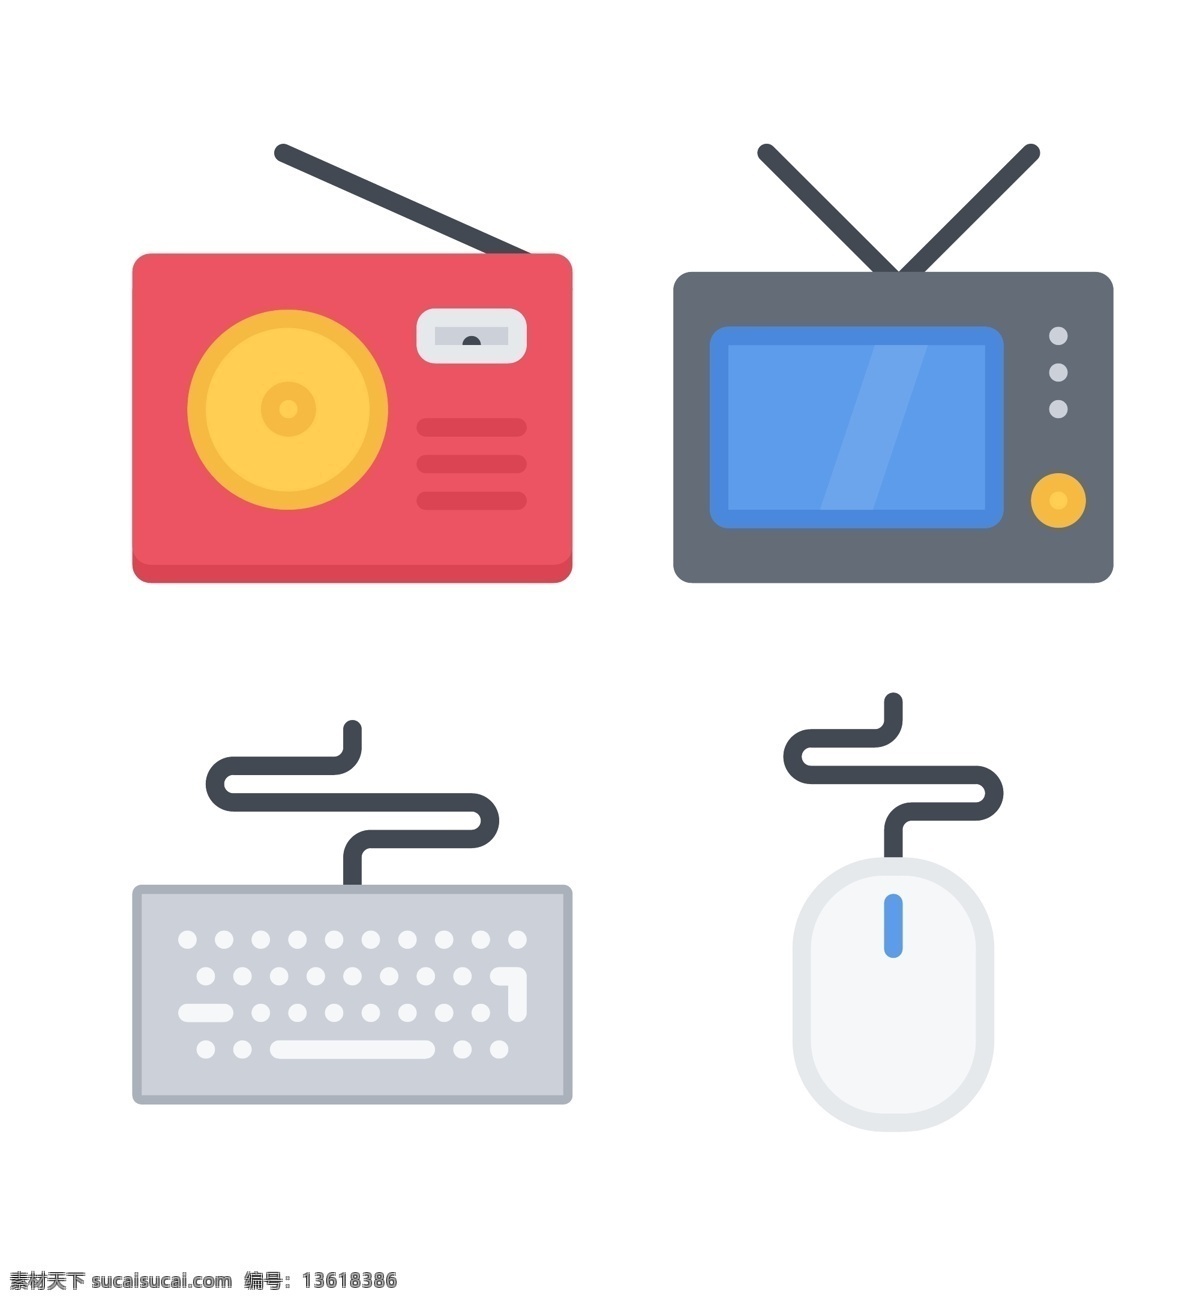 鼠标 电视机 收音机 精美 icon 图标 键盘 网页图标 创意图标 图标下载 图标设计